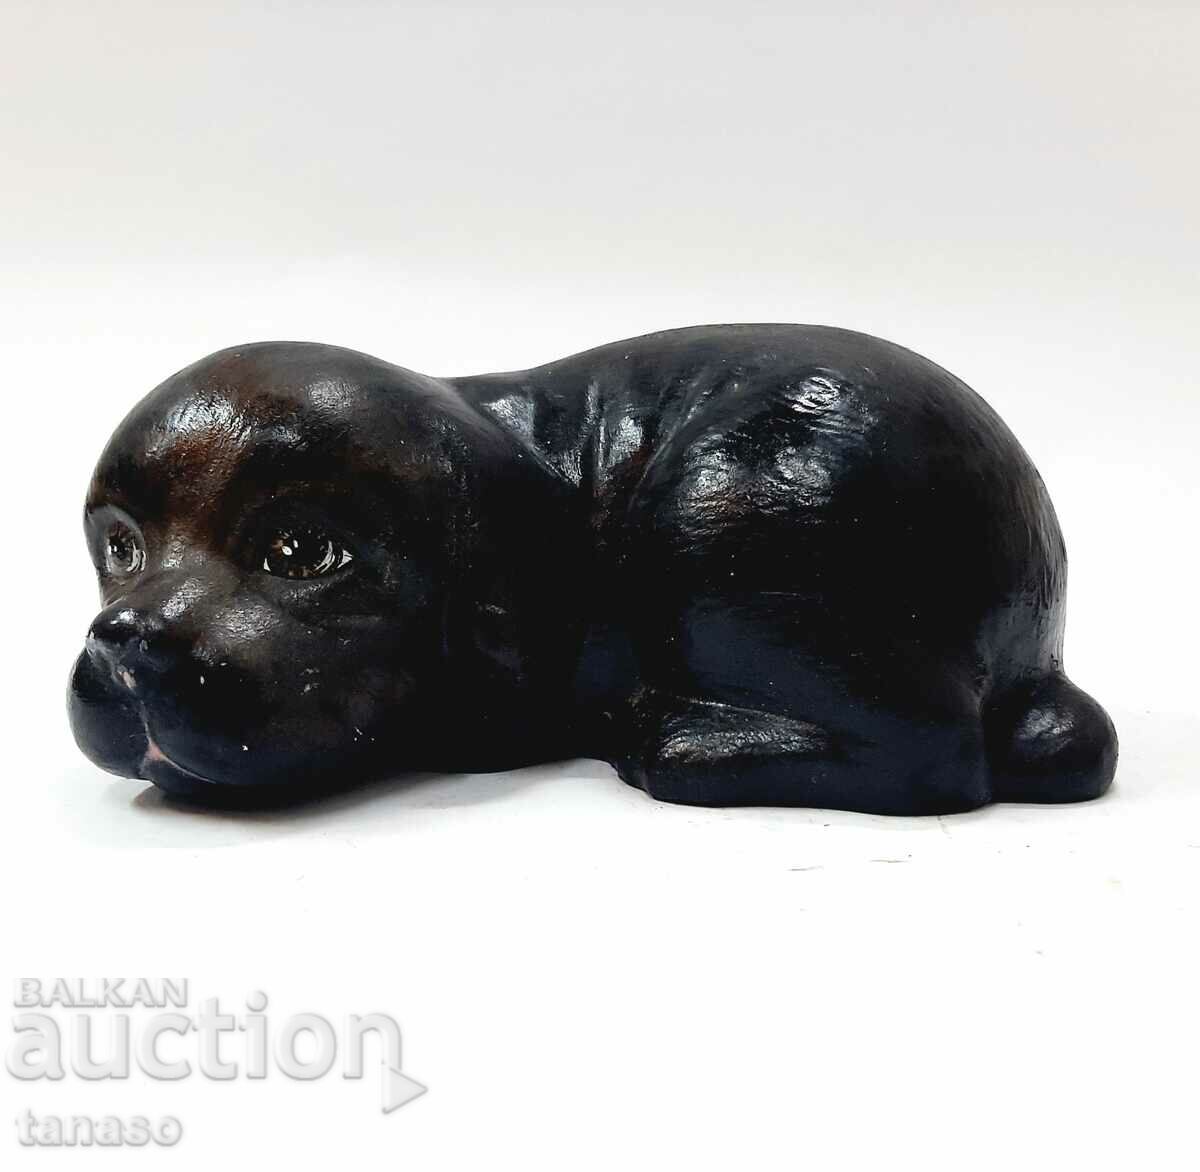 Ceramic figurine of a dog, statuette (13.5)